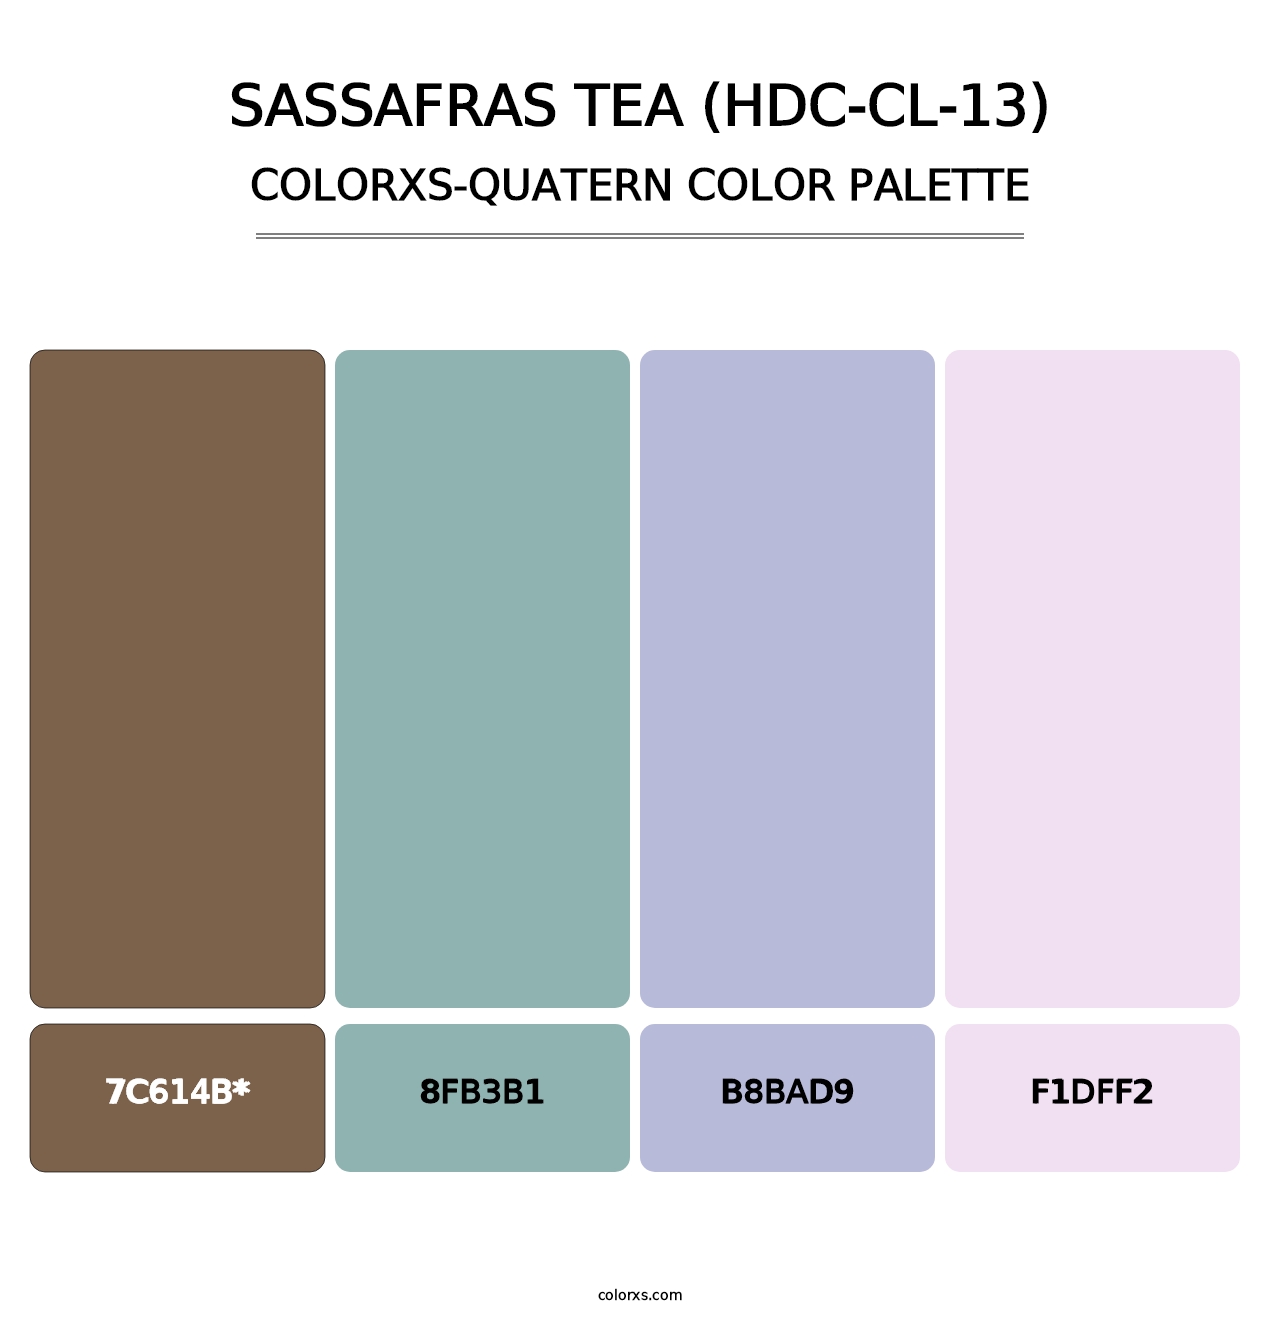 Sassafras Tea (HDC-CL-13) - Colorxs Quatern Palette